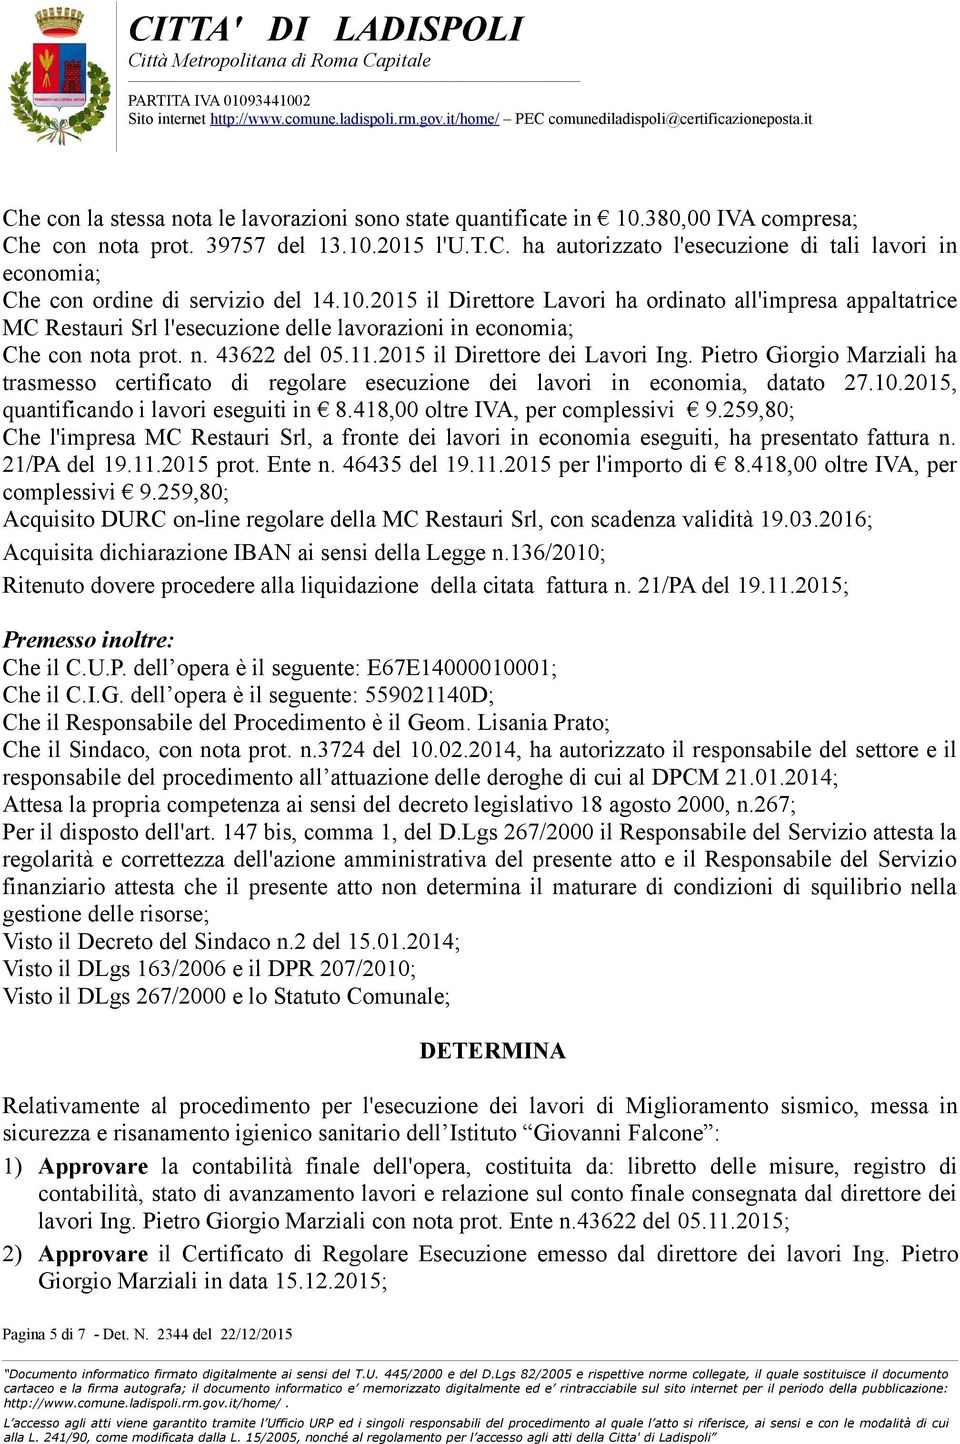 Pietro Giorgio Marziali ha trasmesso certificato di regolare esecuzione dei lavori in economia, datato 27.10.2015, quantificando i lavori eseguiti in 8.418,00 oltre IVA, per complessivi 9.